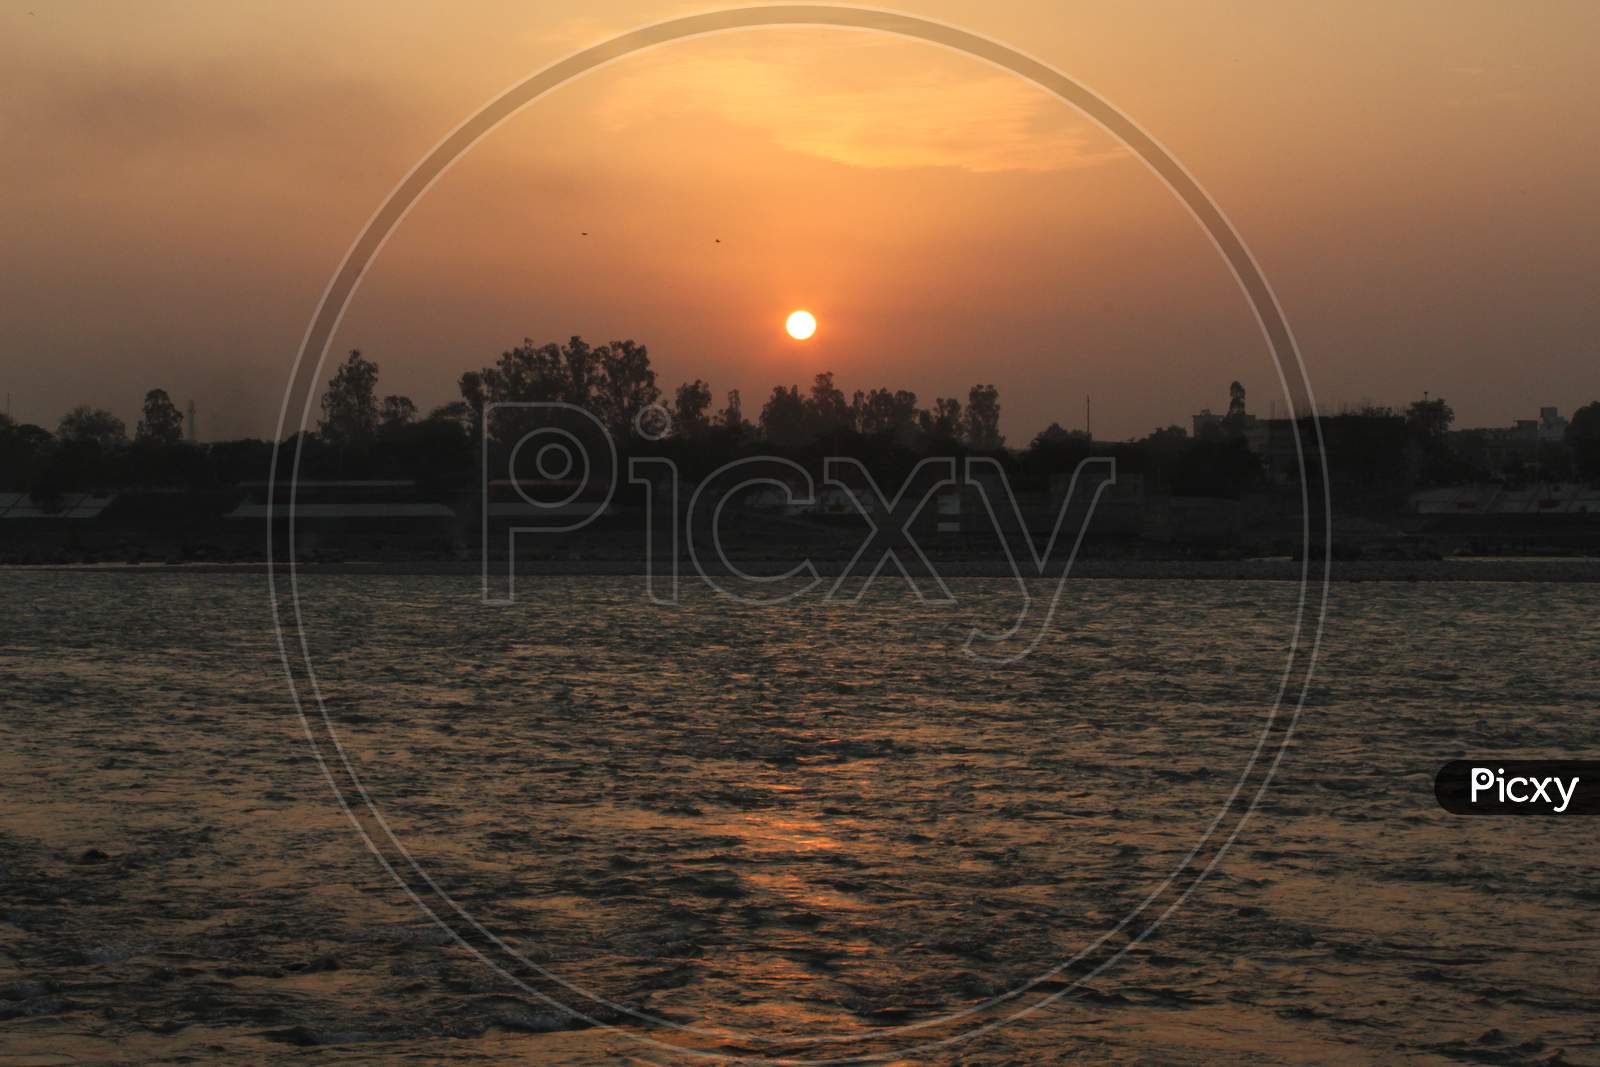 Beautiful Sunset At river Ganga, Rishikesh